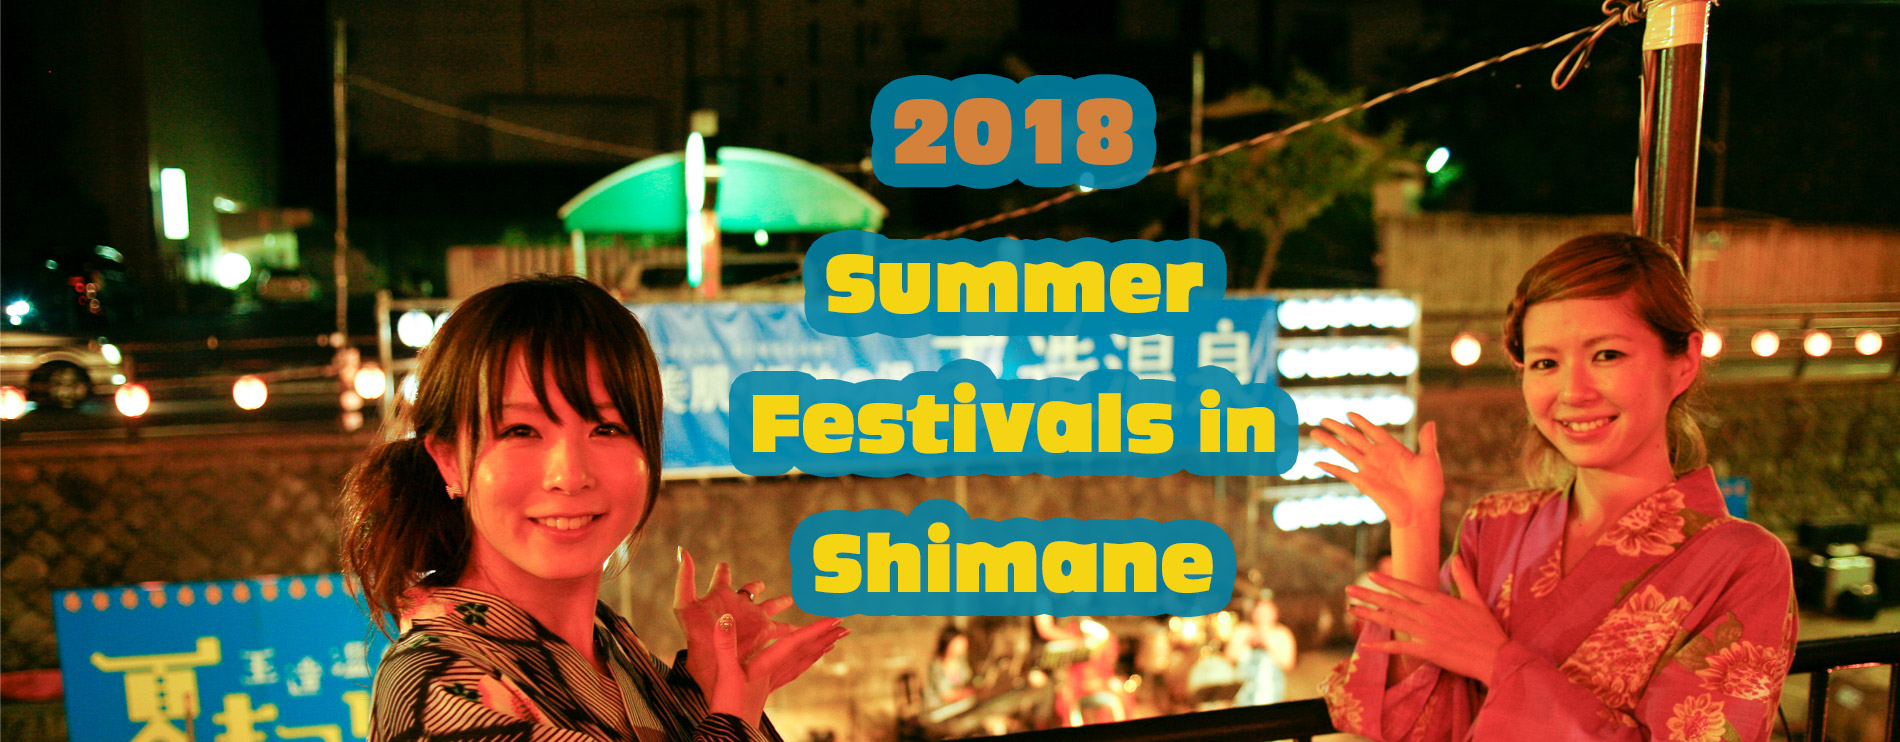 2018 Summer Festivals in Shimane